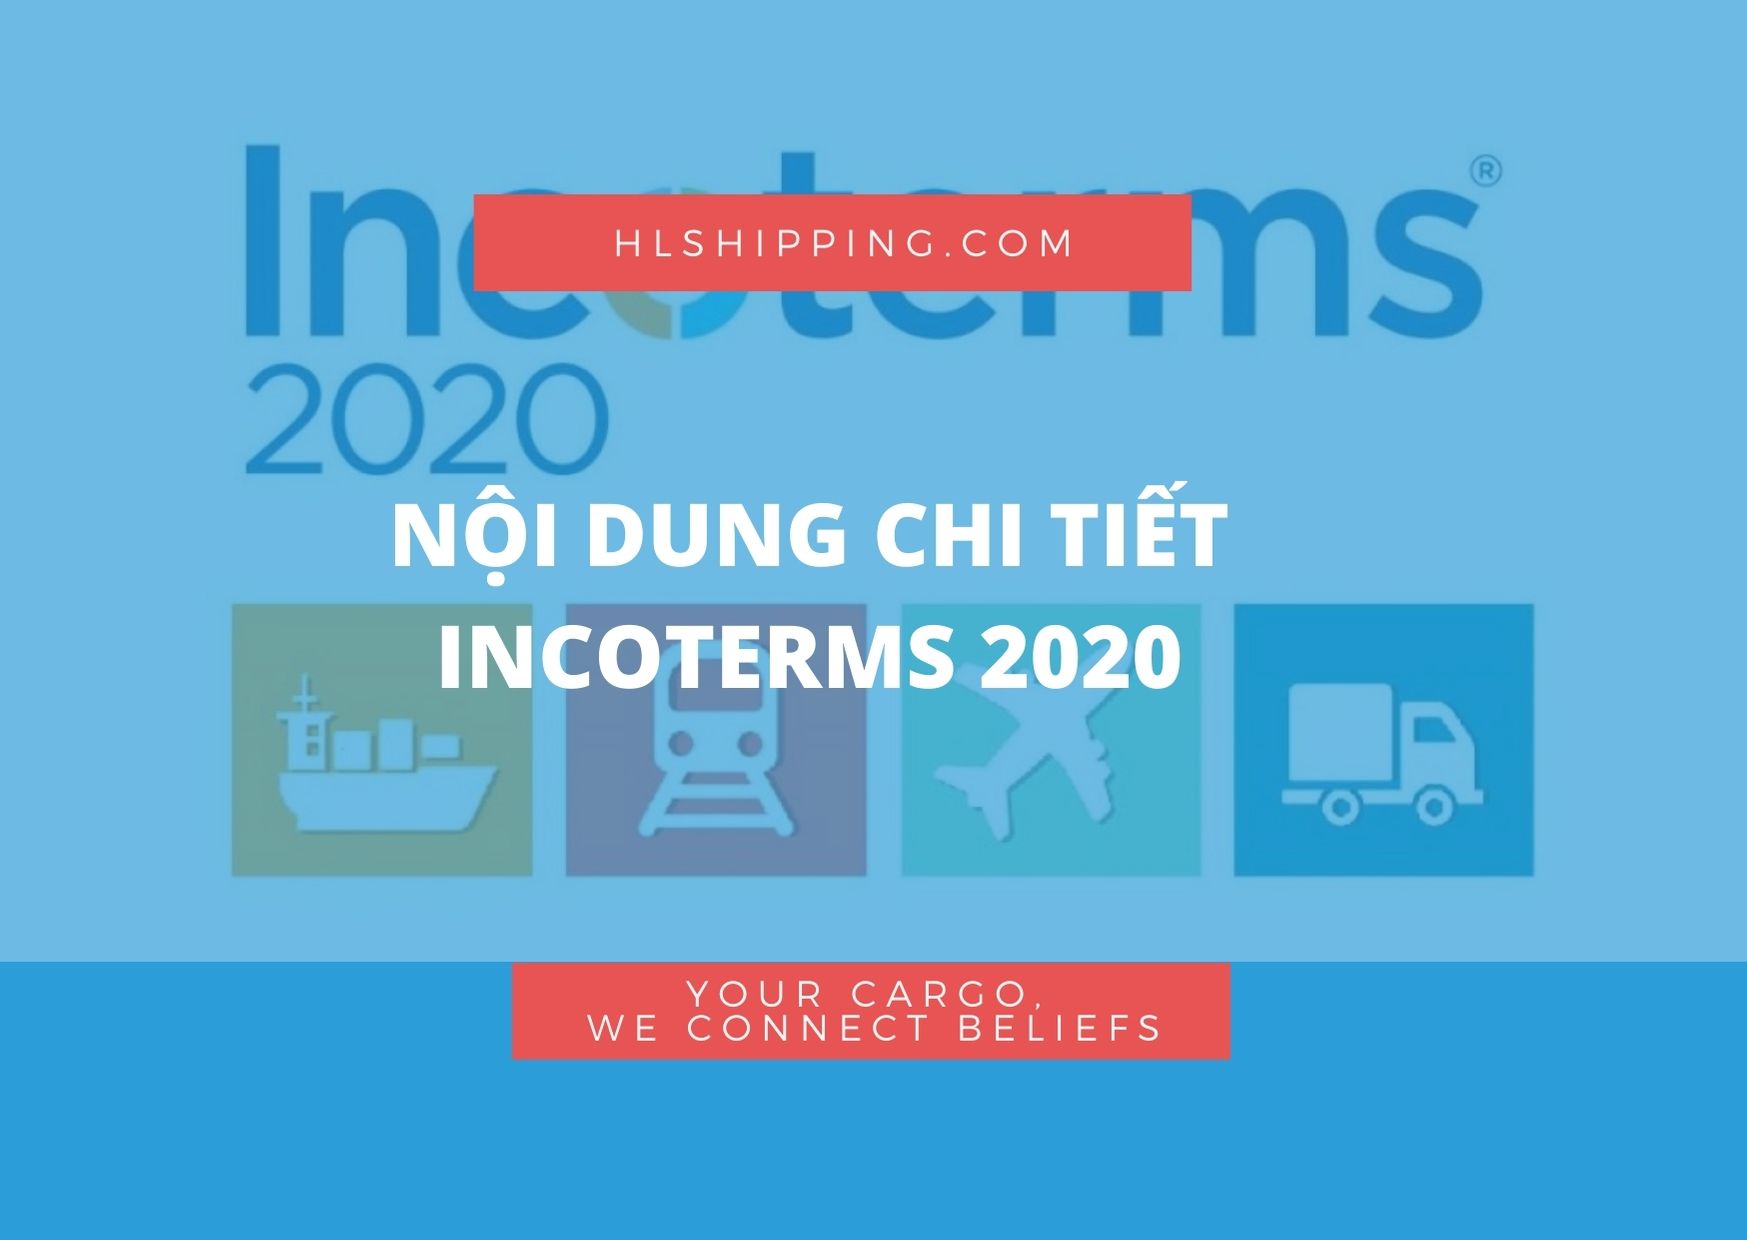 Chi Tiết Nội Dung Incoterms 2020 Mới Nhất Hl Shipping 7666